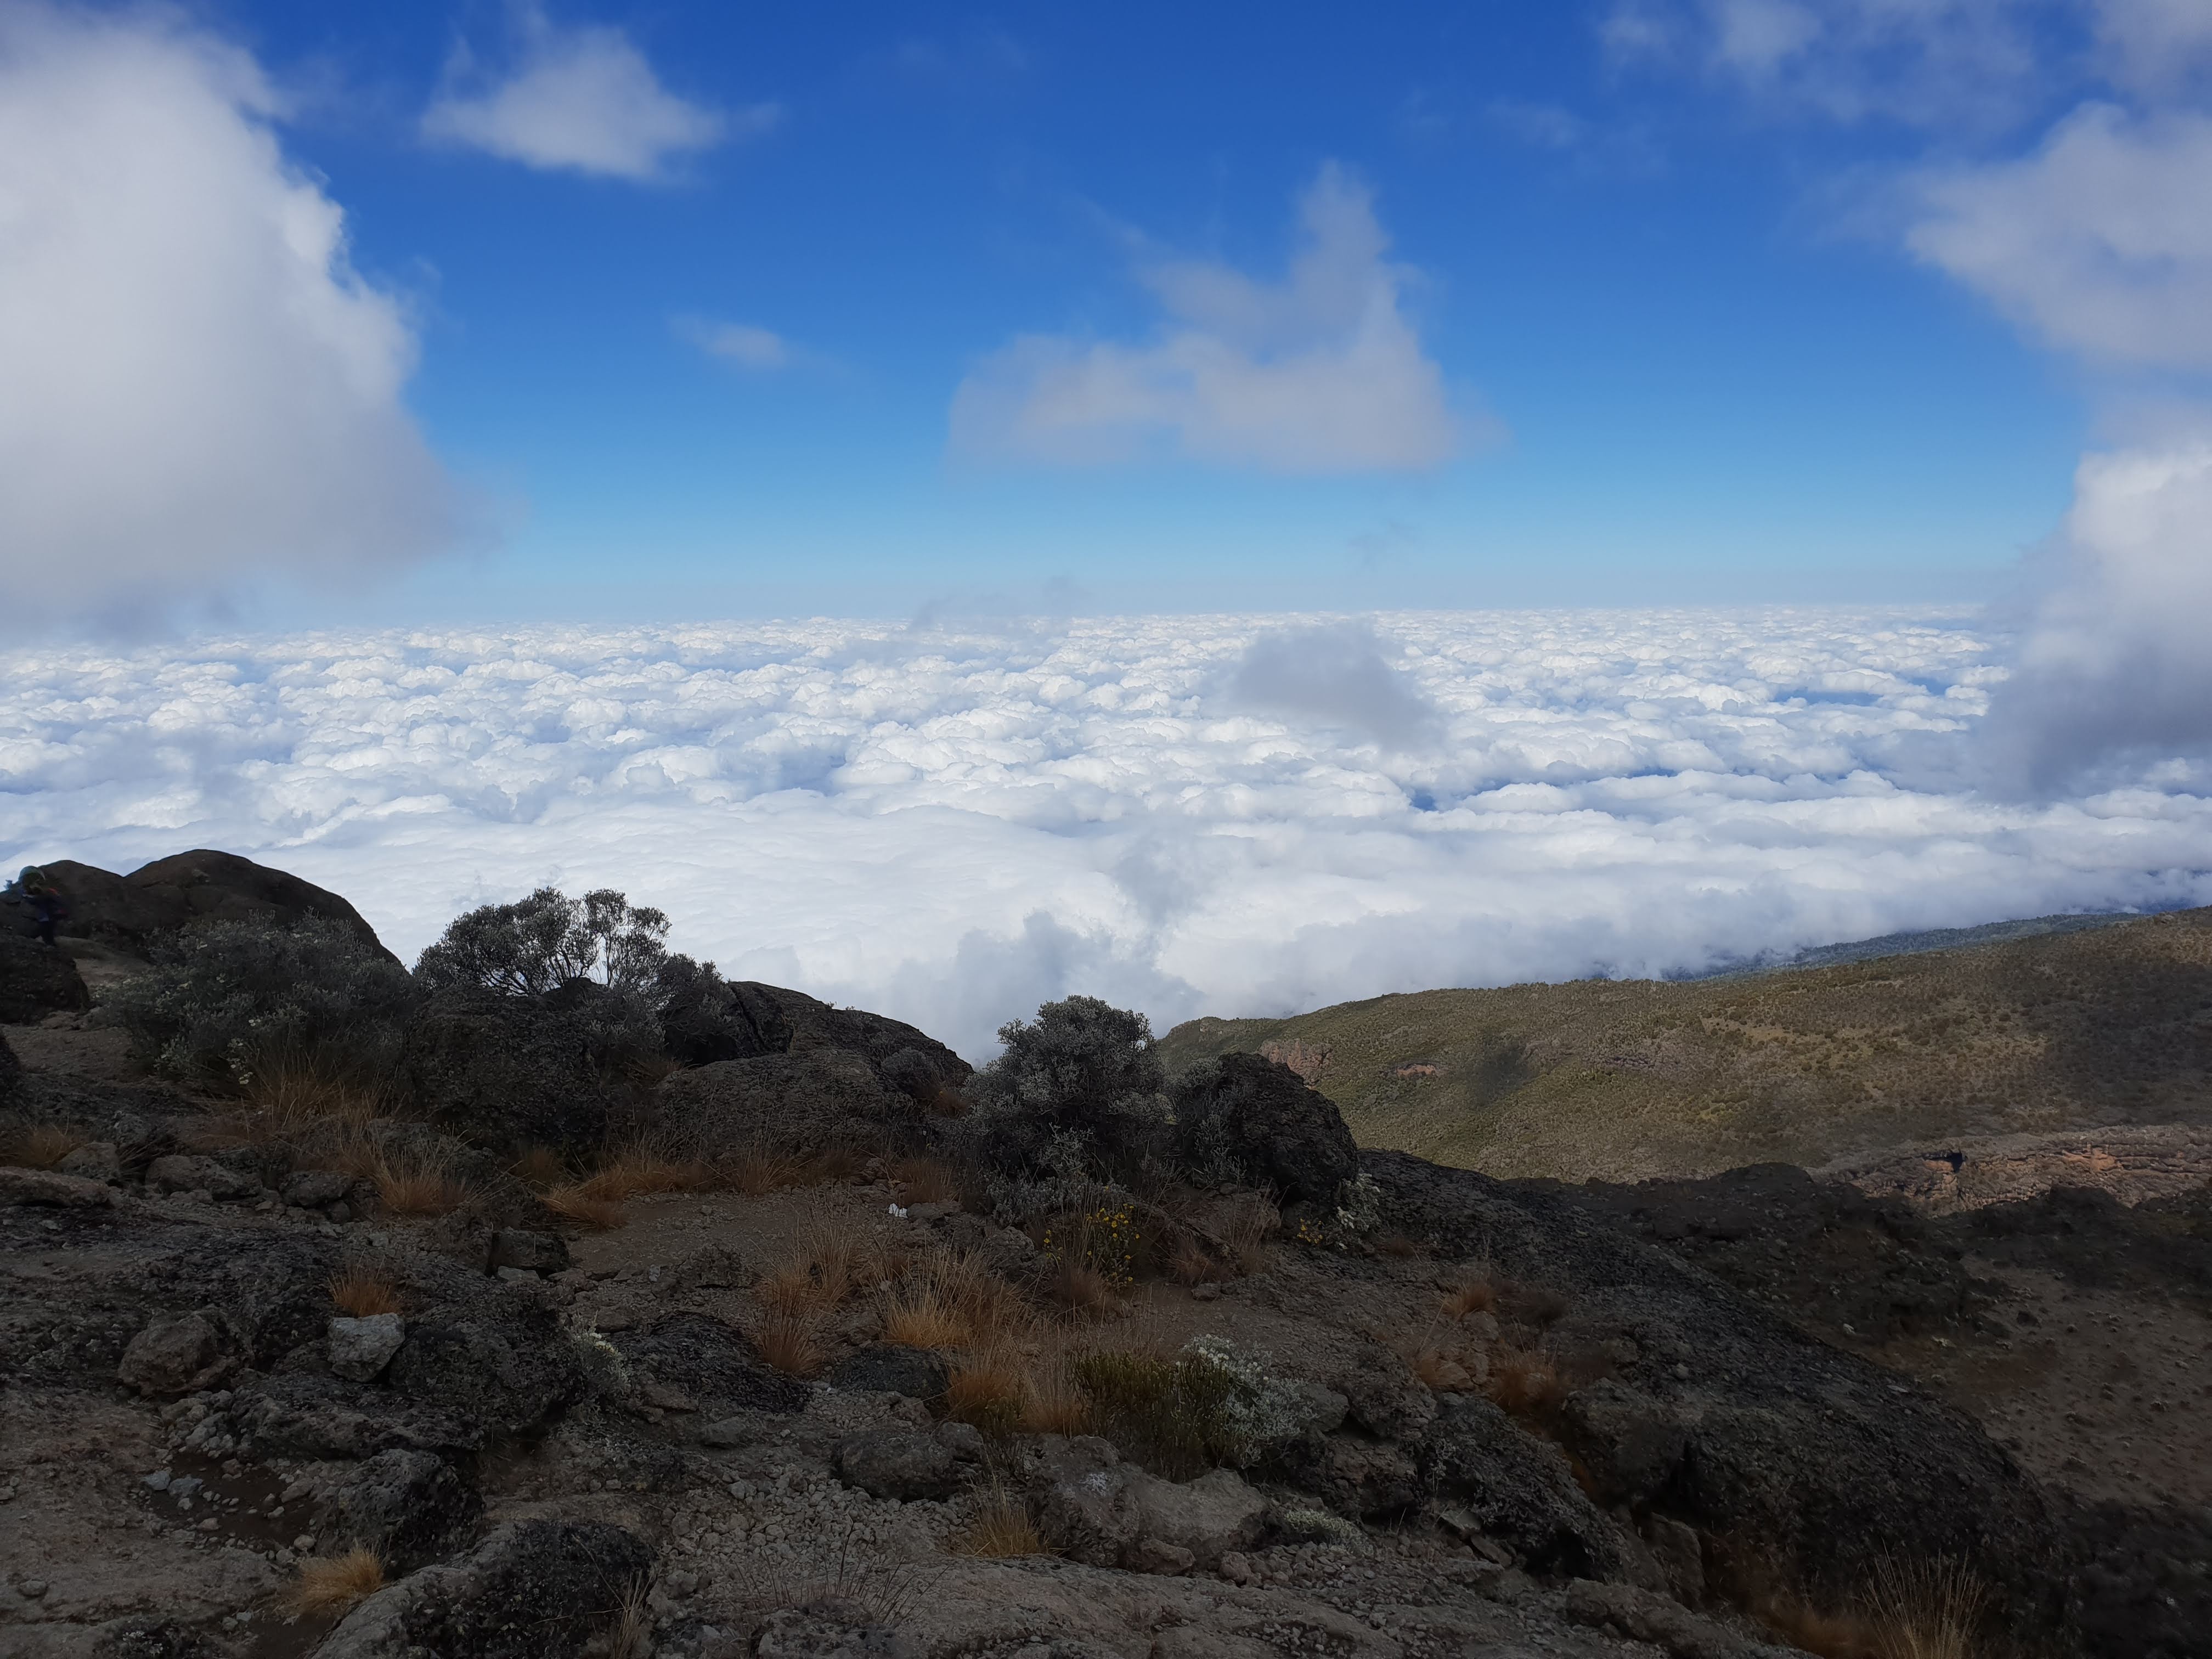 Cloud Inversion at the Barranco Wall Kilimanjaro